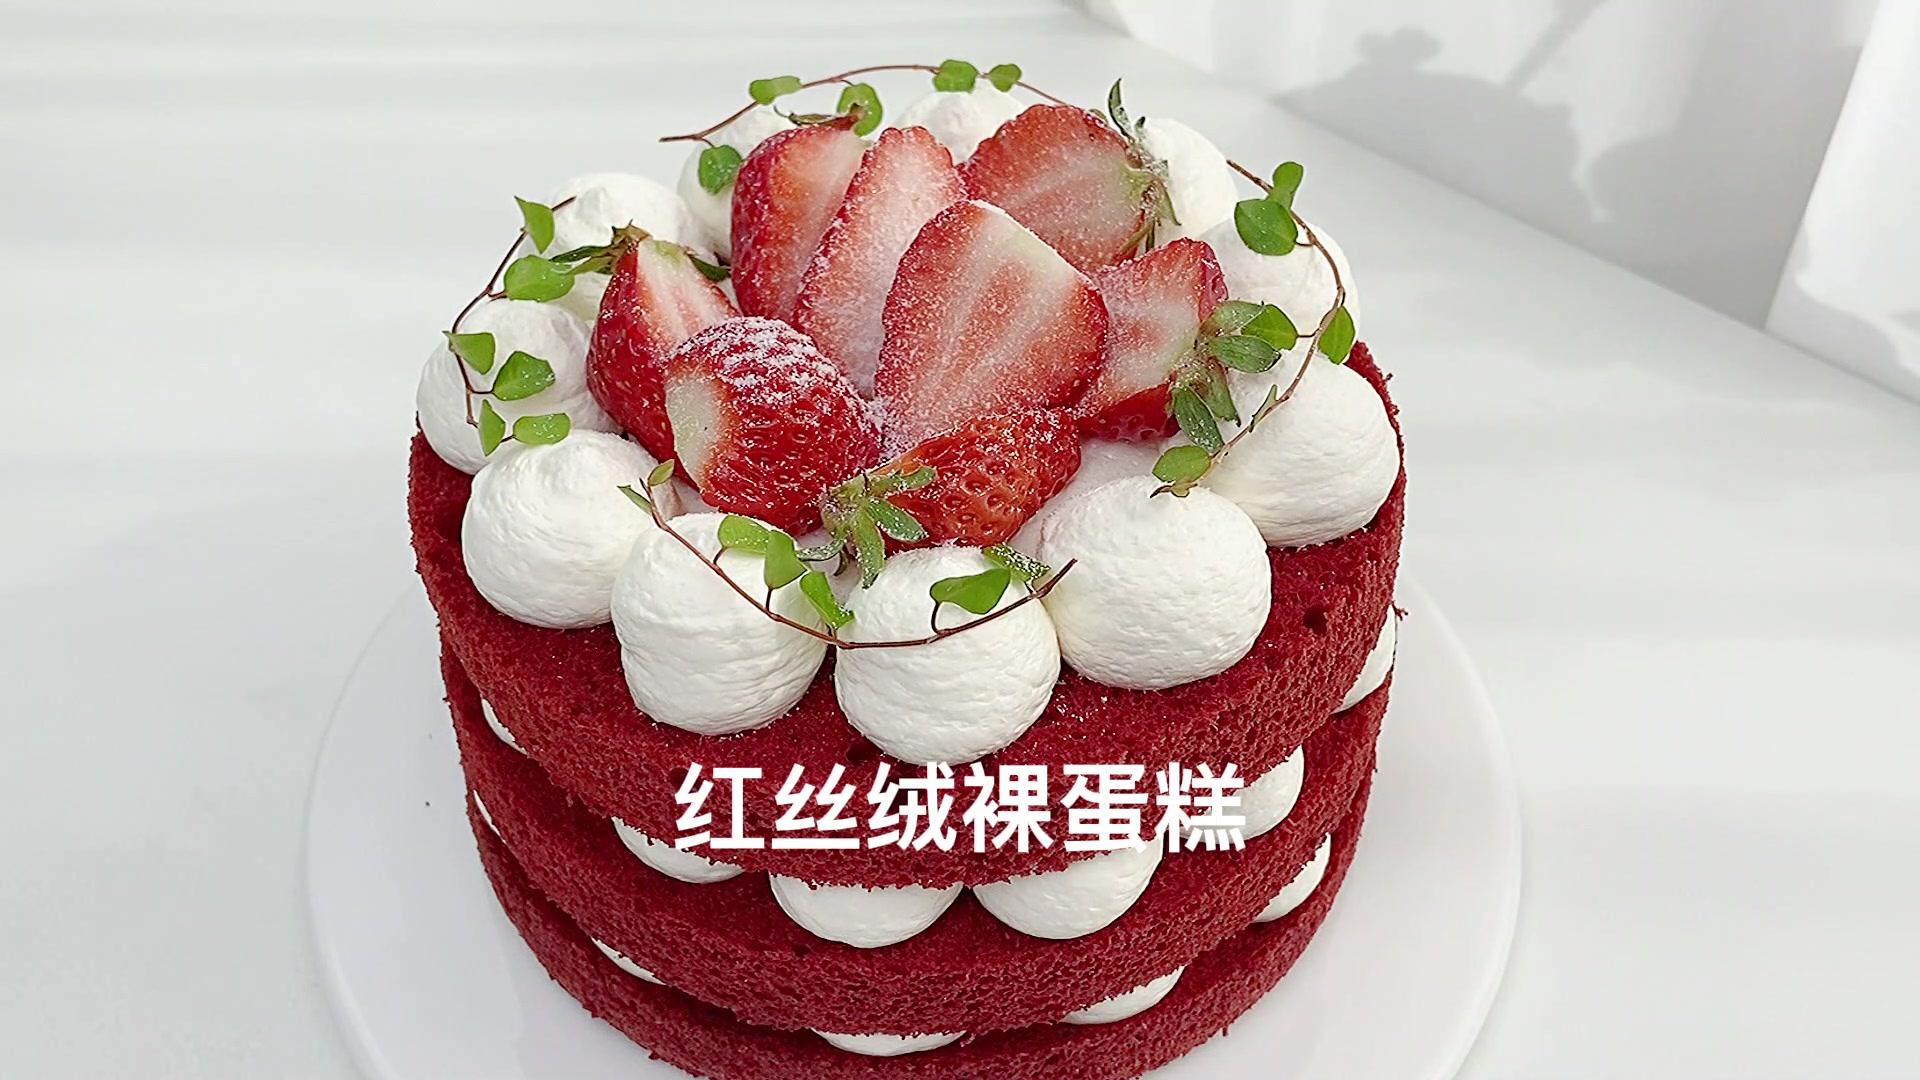 红丝绒蛋糕的做法_【图解】红丝绒蛋糕怎么做如何做好吃_红丝绒蛋糕家常做法大全_提供家用烘焙工具加原材料_豆果美食